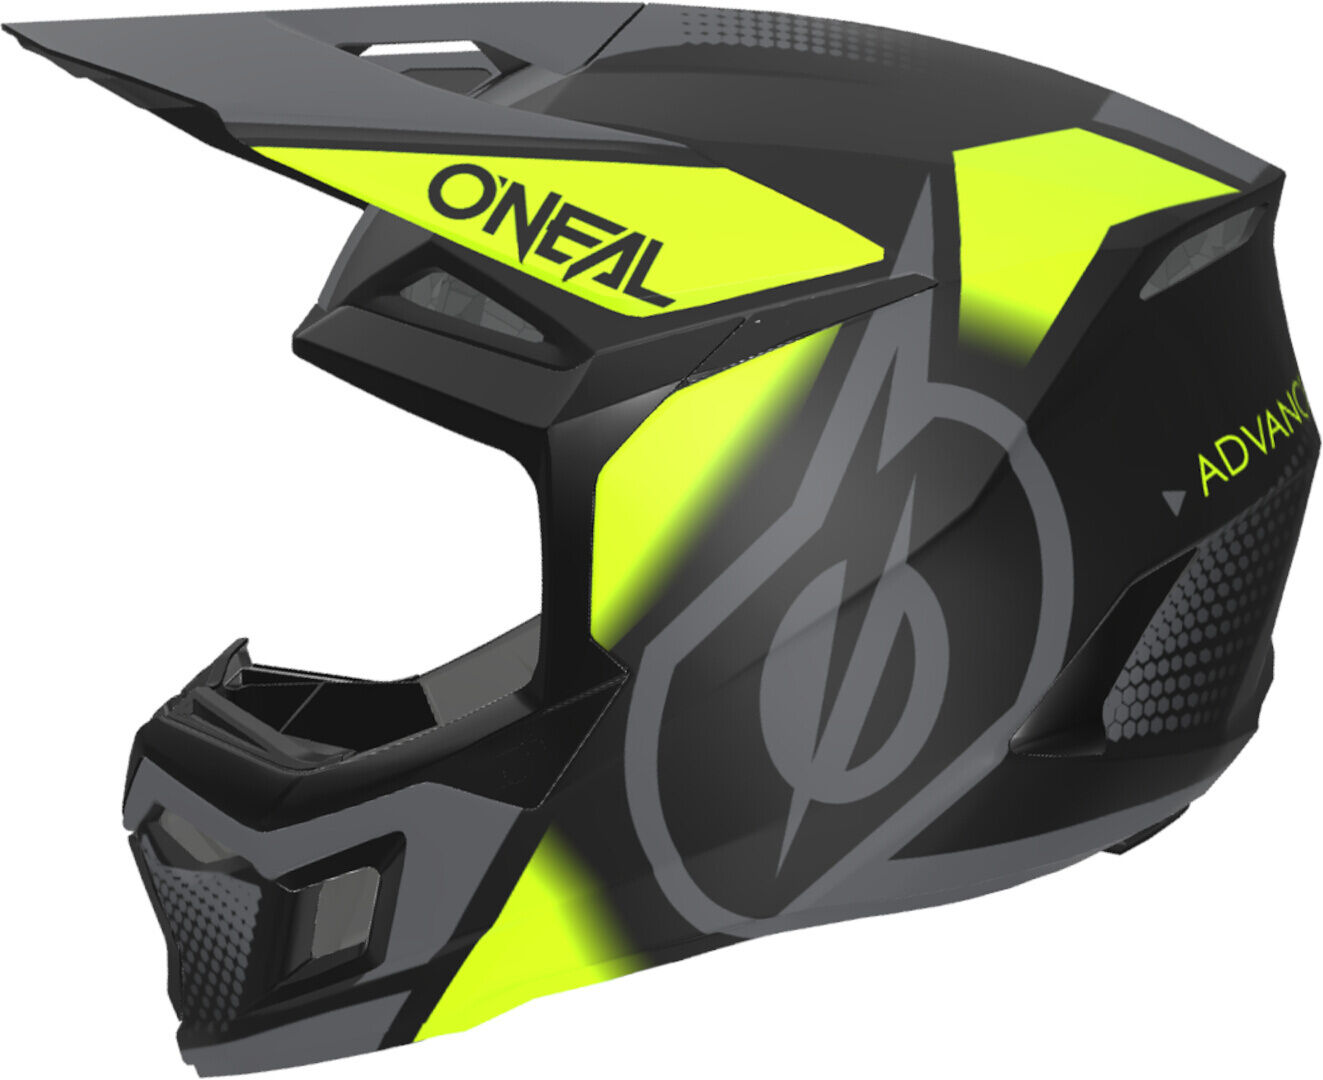 Oneal 3SRS Vision Casco de motocross - Negro Amarillo (XL)